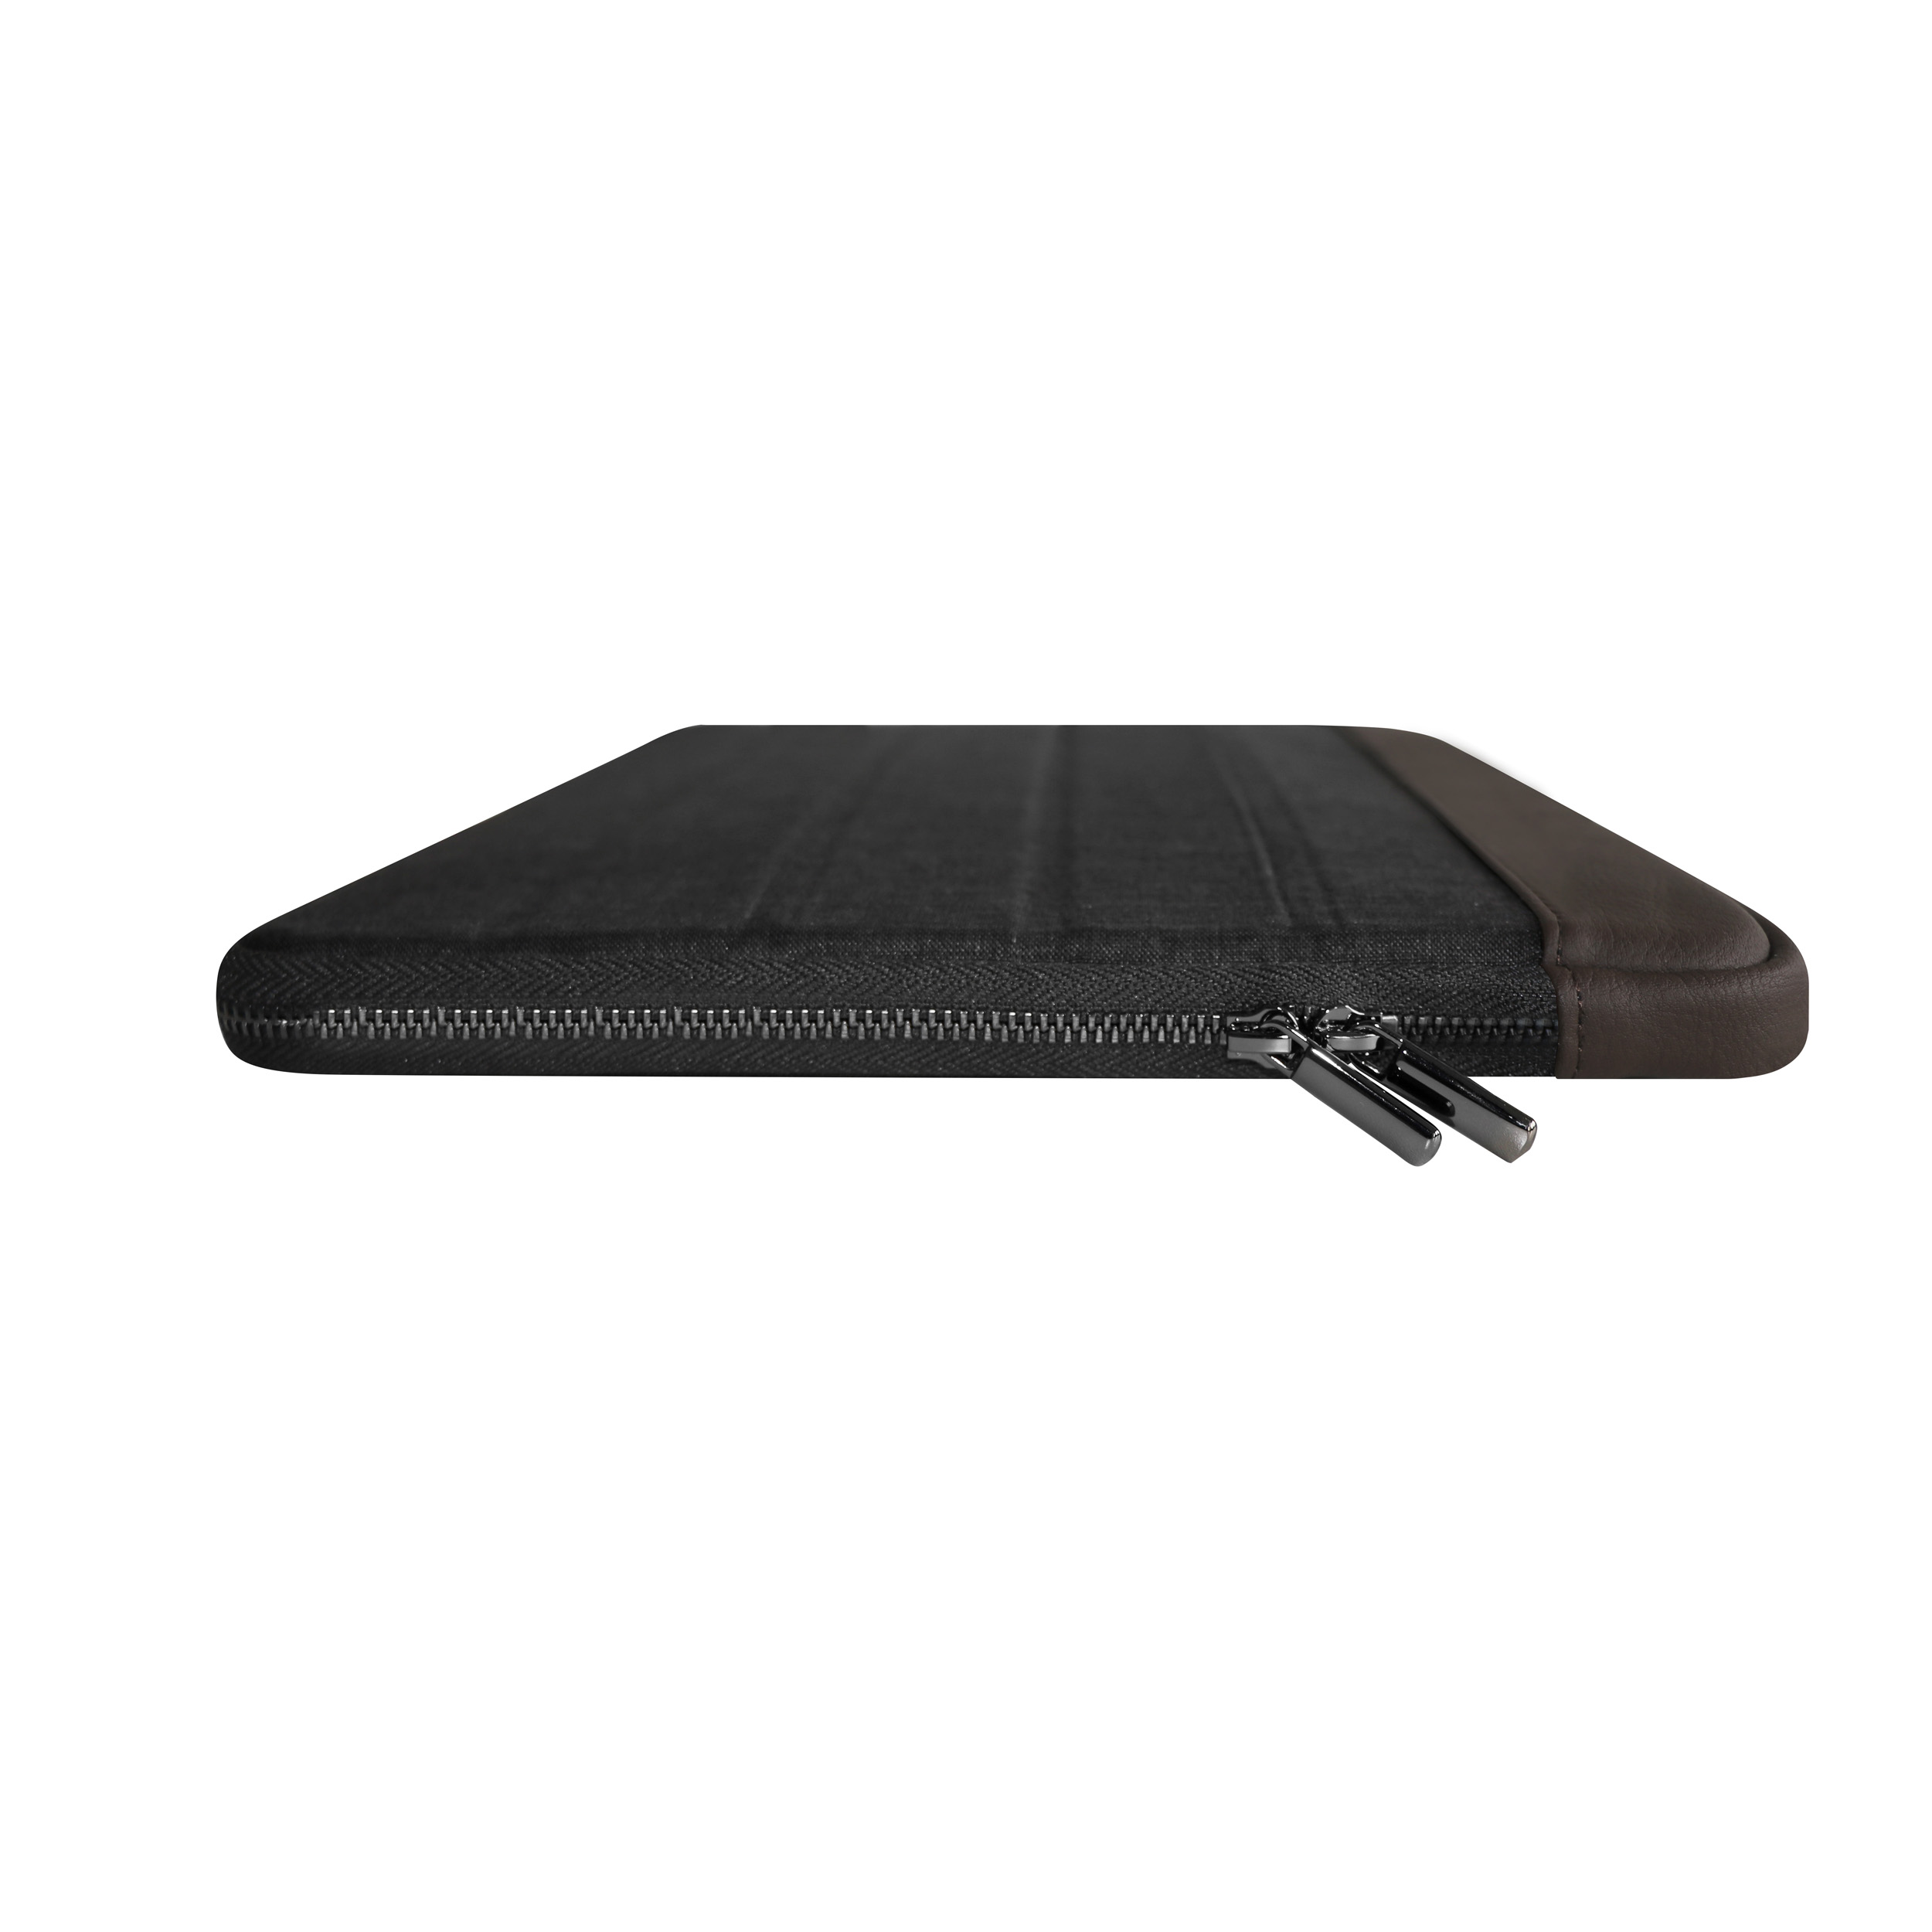 biobasiertes / MacBook Notebook für Sleeve Lederoptik, in Textil, für anthracite Apple Material Sleeve Anthracite/Brown pro 13 Sleeve brown KMP